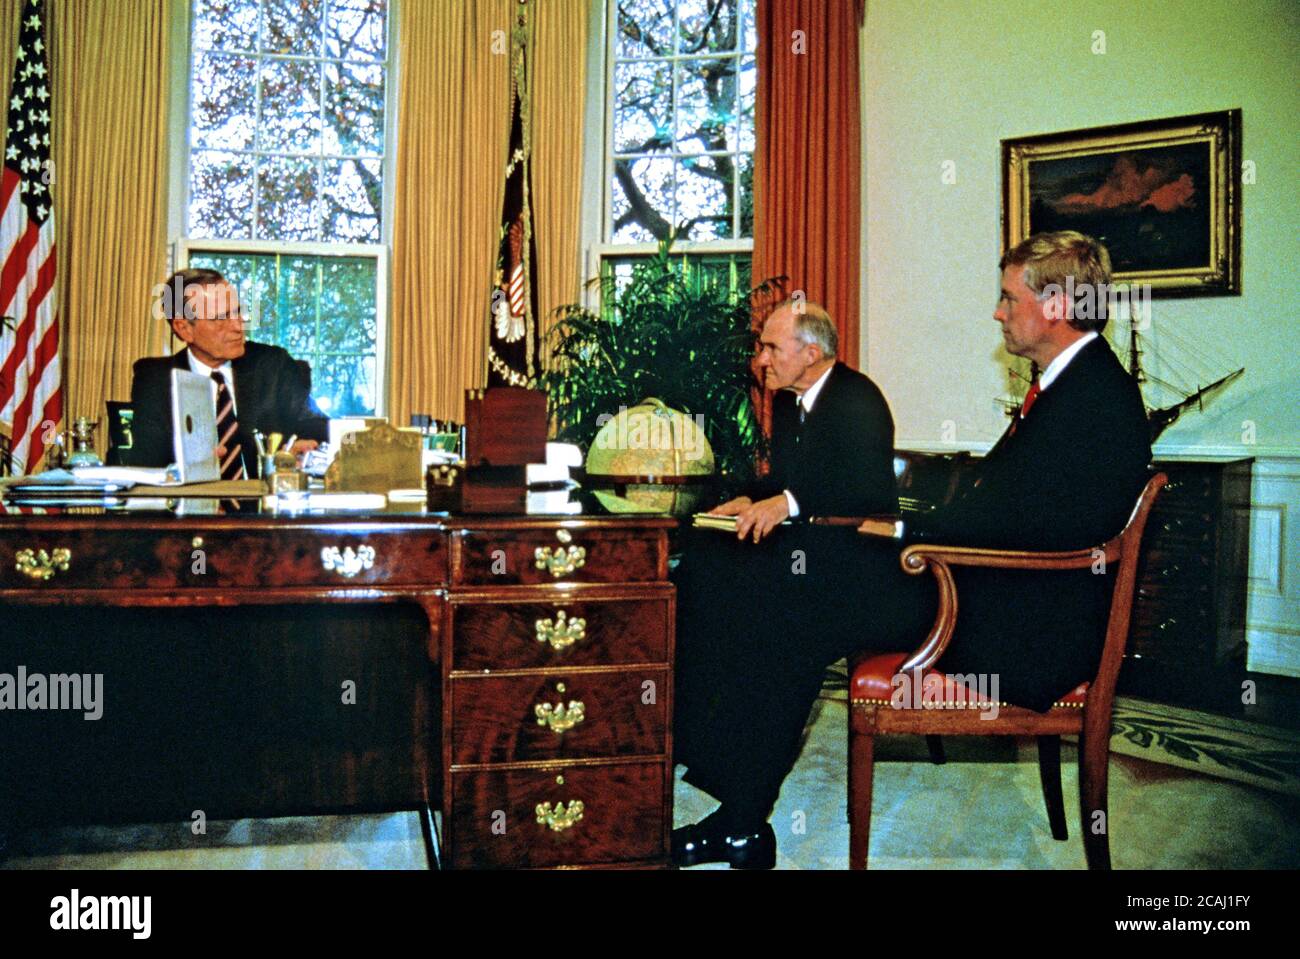 Dans ce dossier photo, le président des États-Unis George H.W. Bush rencontre des conseillers lors d'une réunion d'information sur le prochain Sommet de Malte avec le président soviétique Mikhaïl Gorbatchev (non représenté) dans le Bureau ovale de la Maison Blanche à Washington, D.C., le 28 novembre 1889. De gauche à droite: Président Bush; conseiller à la sécurité nationale Brent Scowcroft; et vice-président américain Dan Quayle..Credit: Arnie Sachs / CNP / MediaPunch Banque D'Images